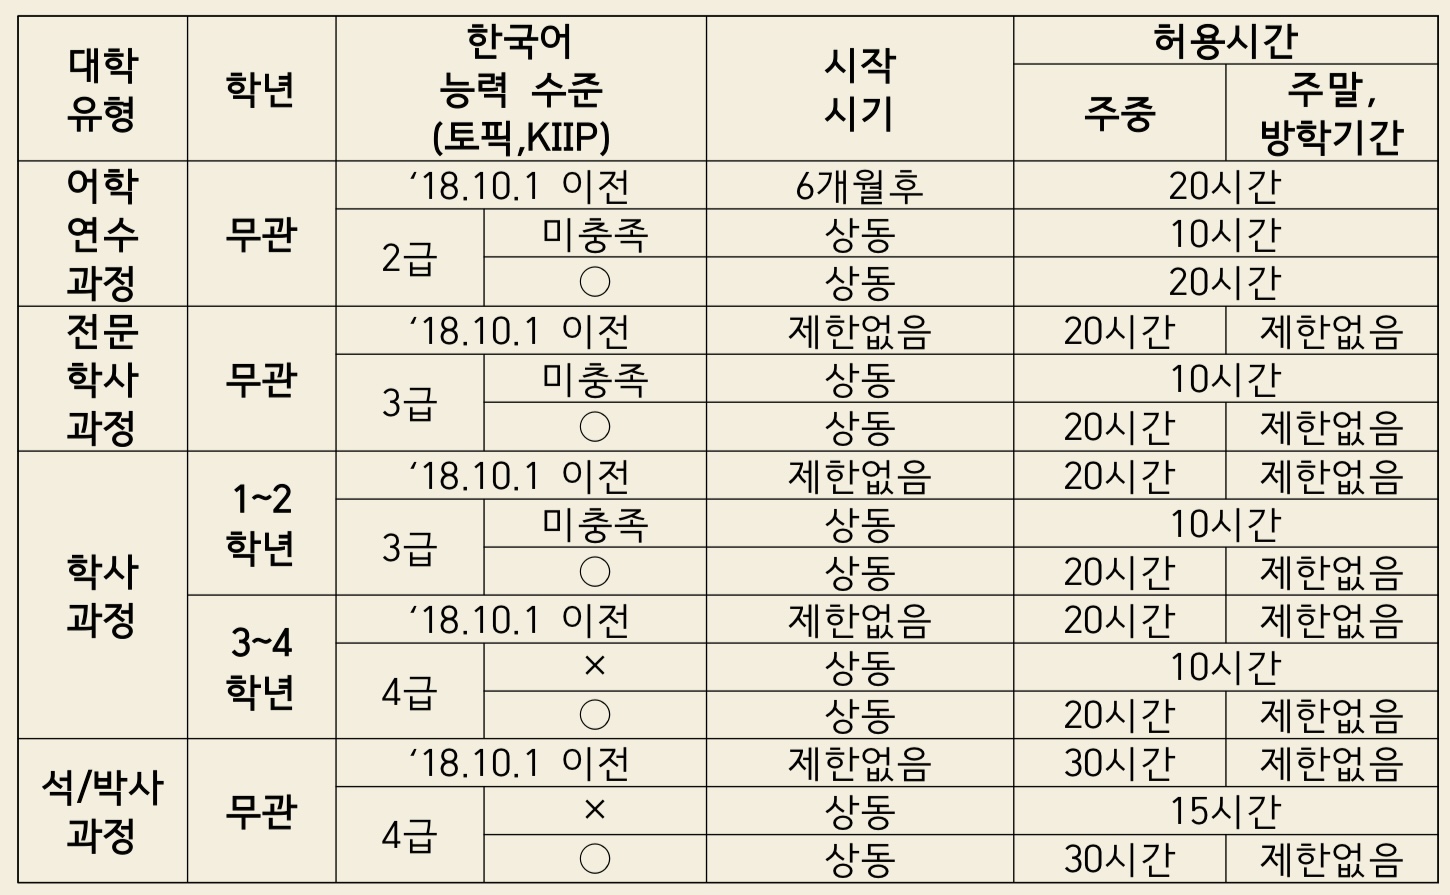 한국어 능력 및 학위과정별 허용시간(19.6.11.부 시행)